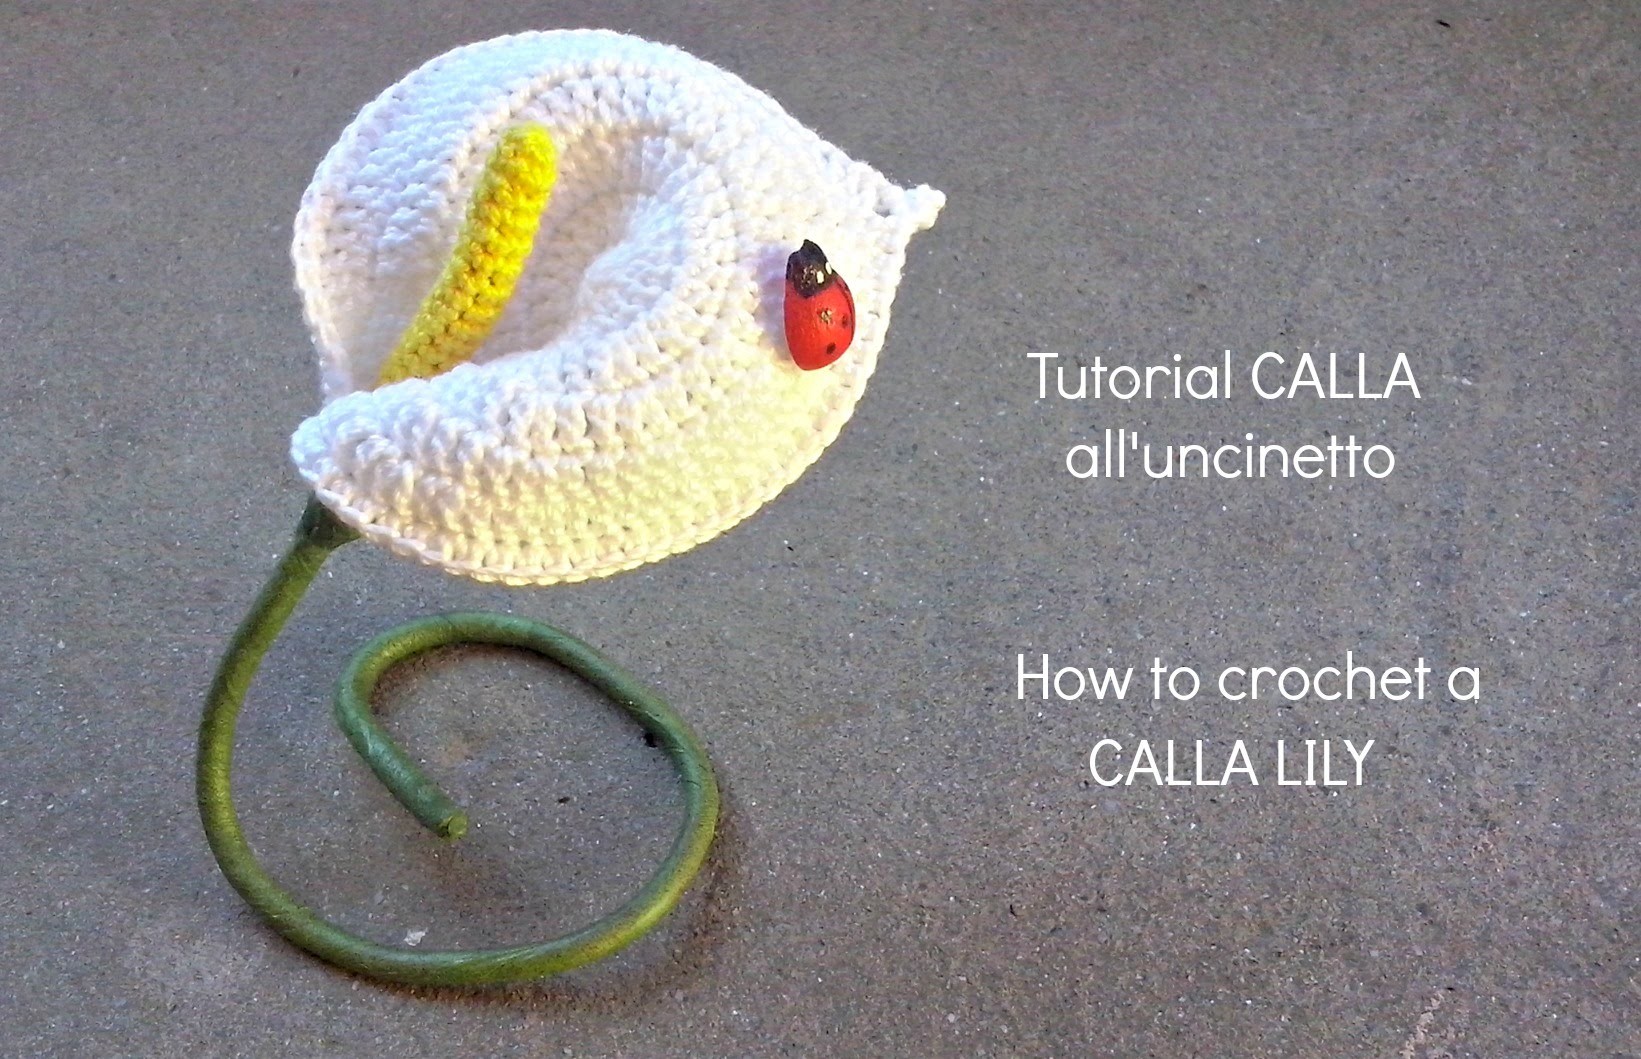 Tutorial CALLA all'uncinetto | How to crochet a CALLA LILY